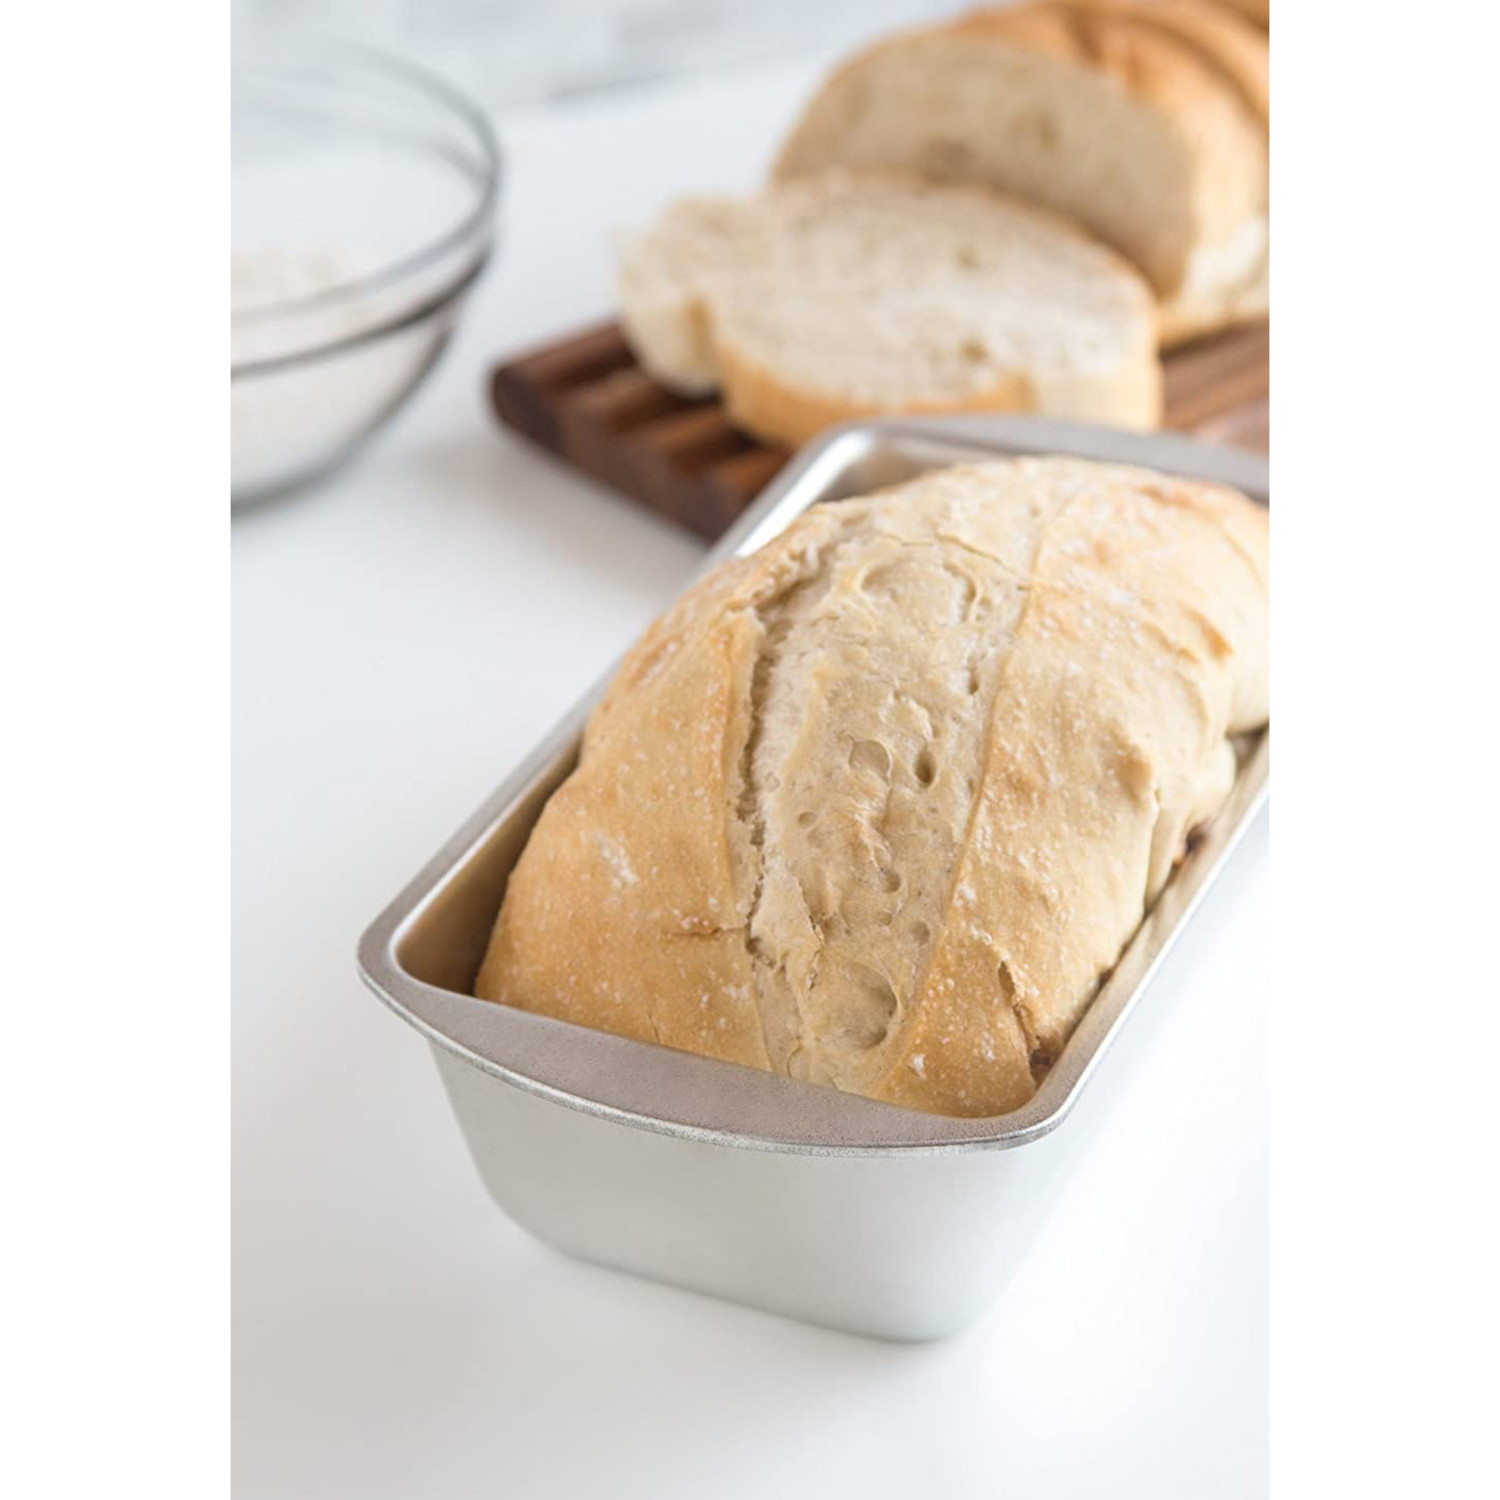 Carolina Cooker® 8.5 x 4.5 Preseasoned Bread Pan